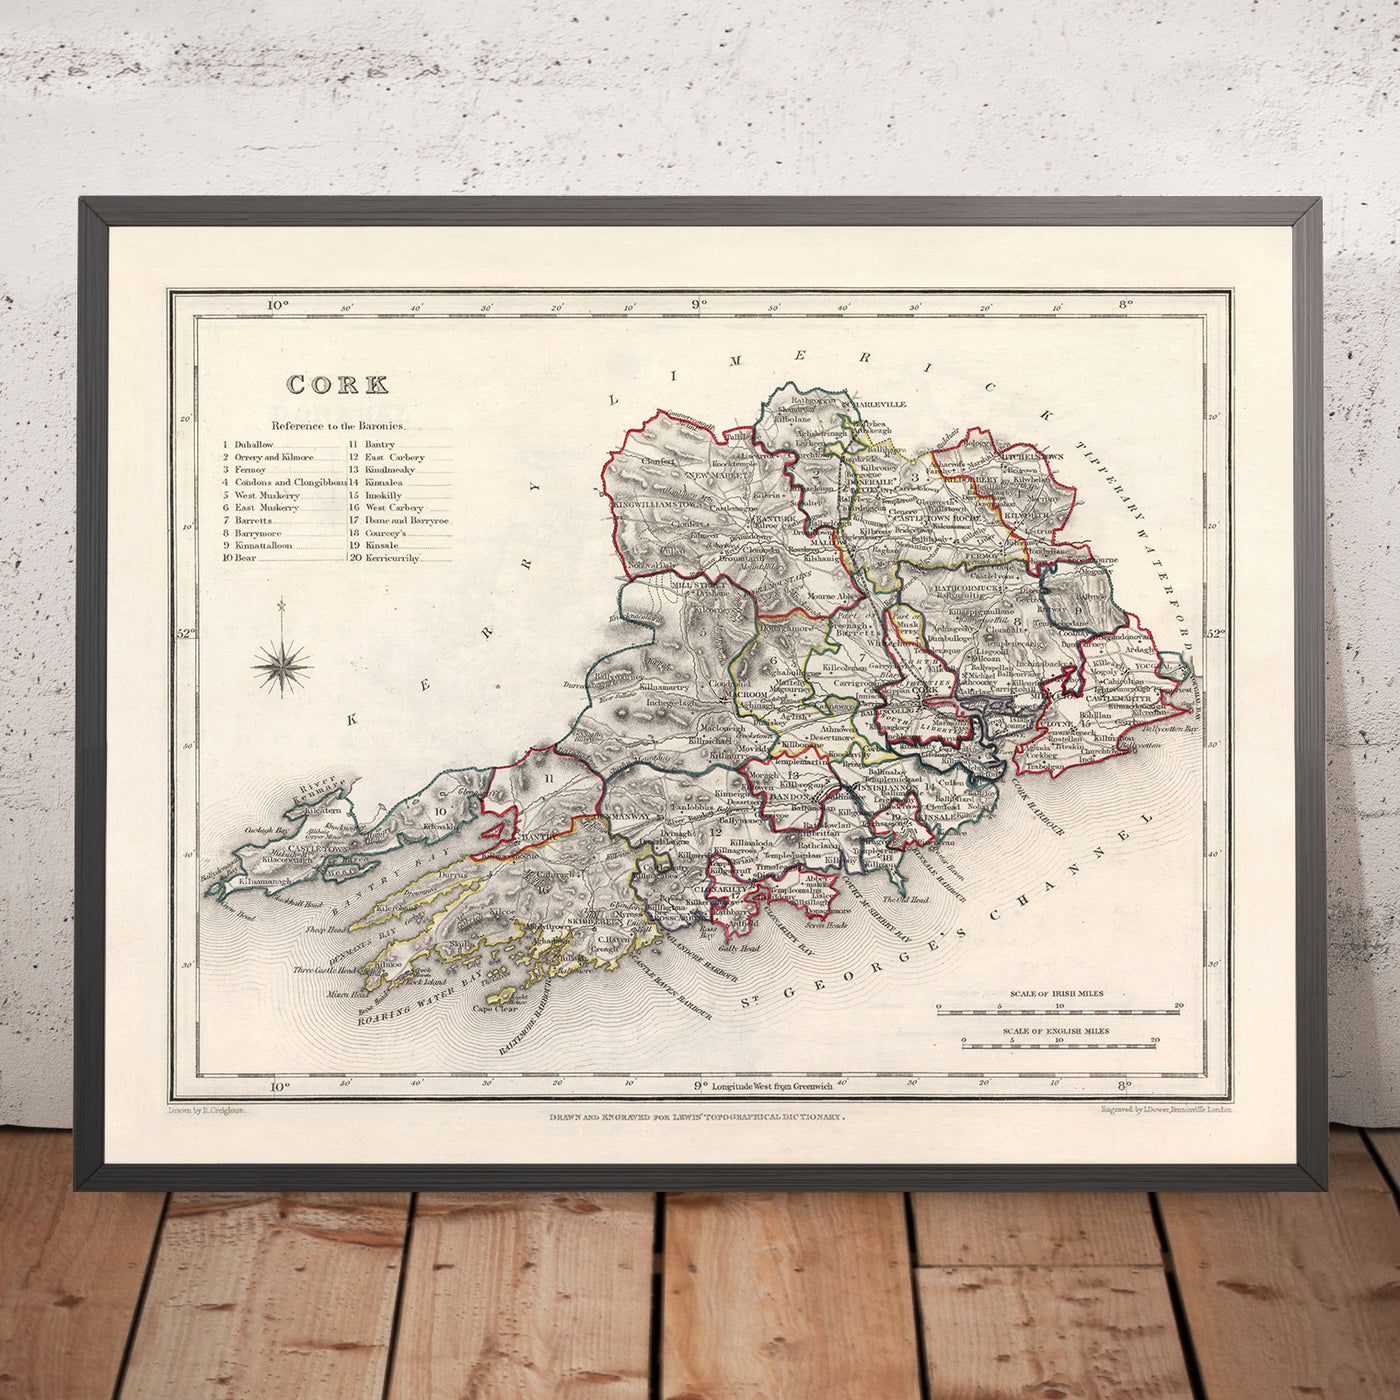 Alte Karte der Grafschaft Cork von Samuel Lewis, 1844: Cobh, Kinsale, Blarney Castle, Fota House, Mizen Head